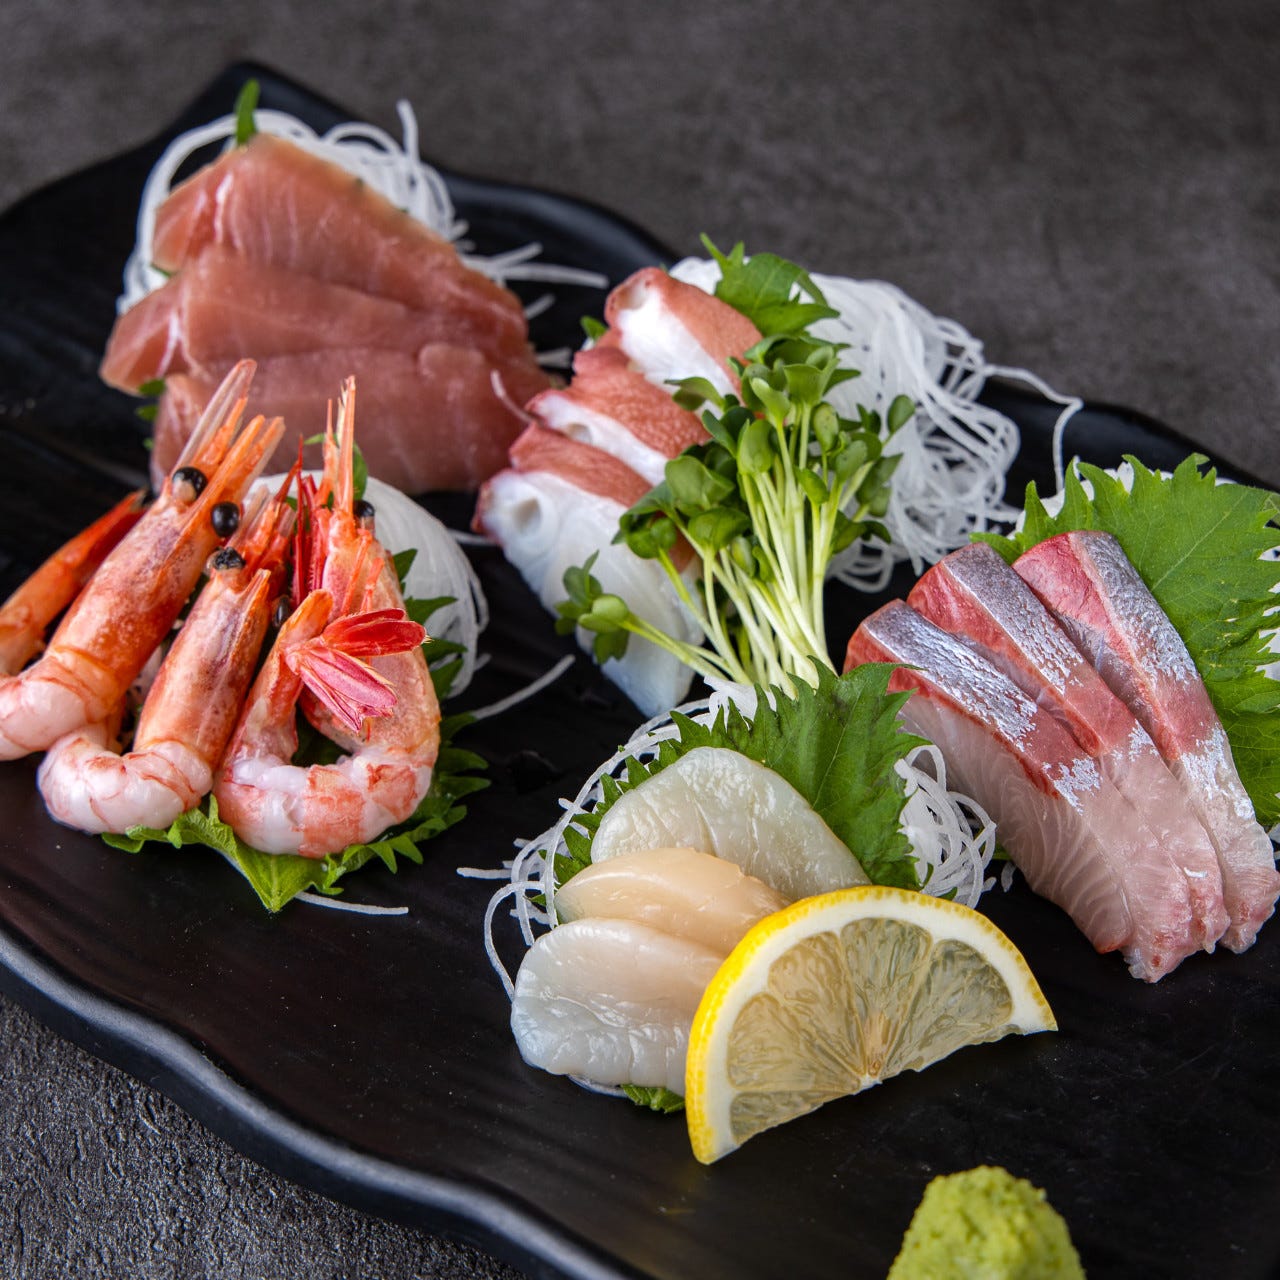 北海道直送鮮魚と日本酒 完全個室居酒屋 あばれ鮮魚 池袋店